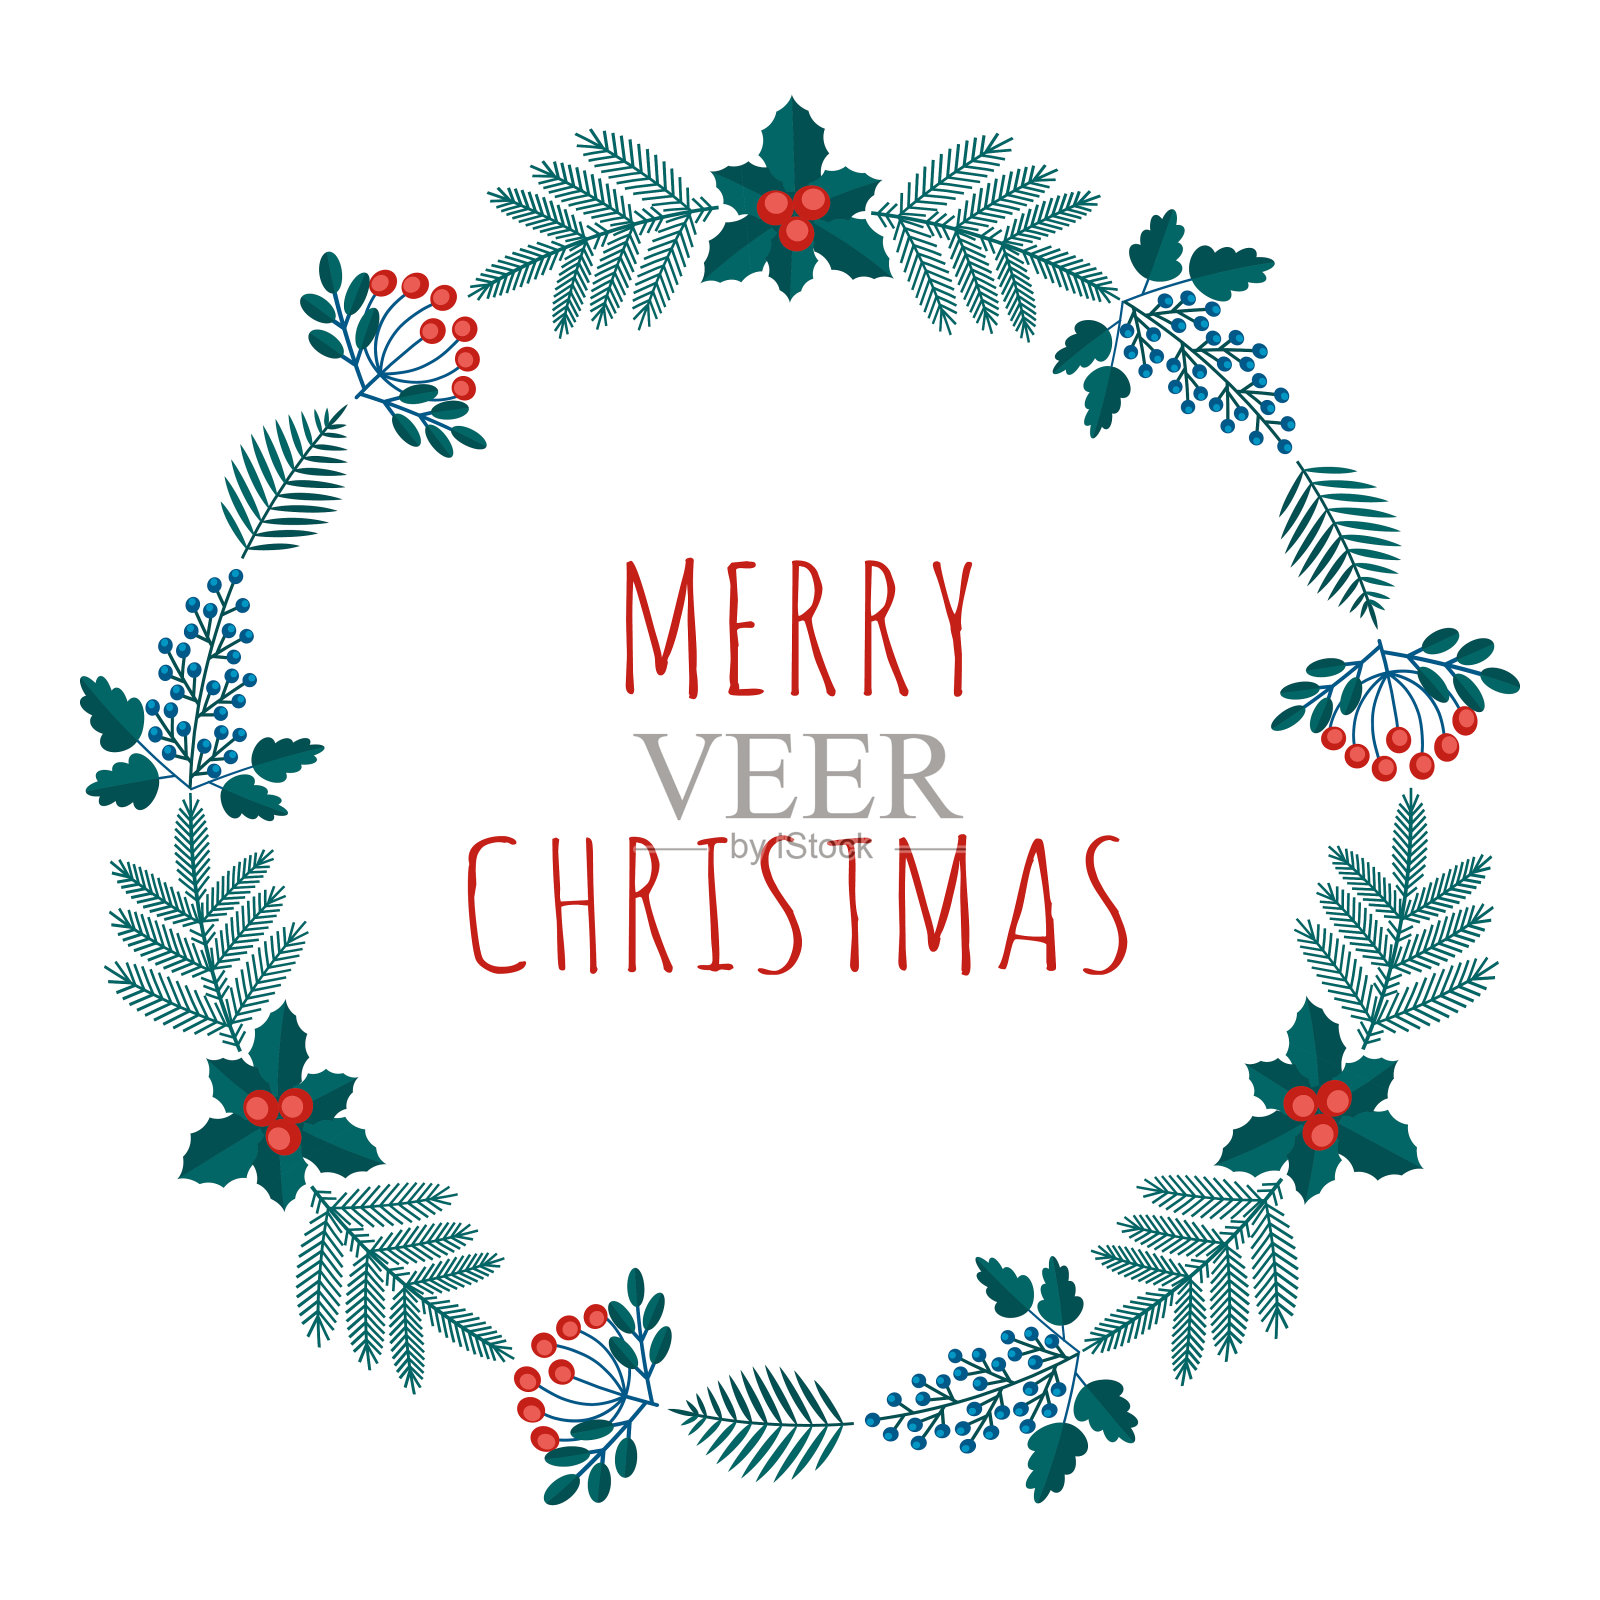 圣诞贺卡与冬季植物框架在现代扁平风格。Stock vector插图与植物符号的节日-松树，圆锥体，树枝，浆果在红色，绿色的颜色。设计元素图片